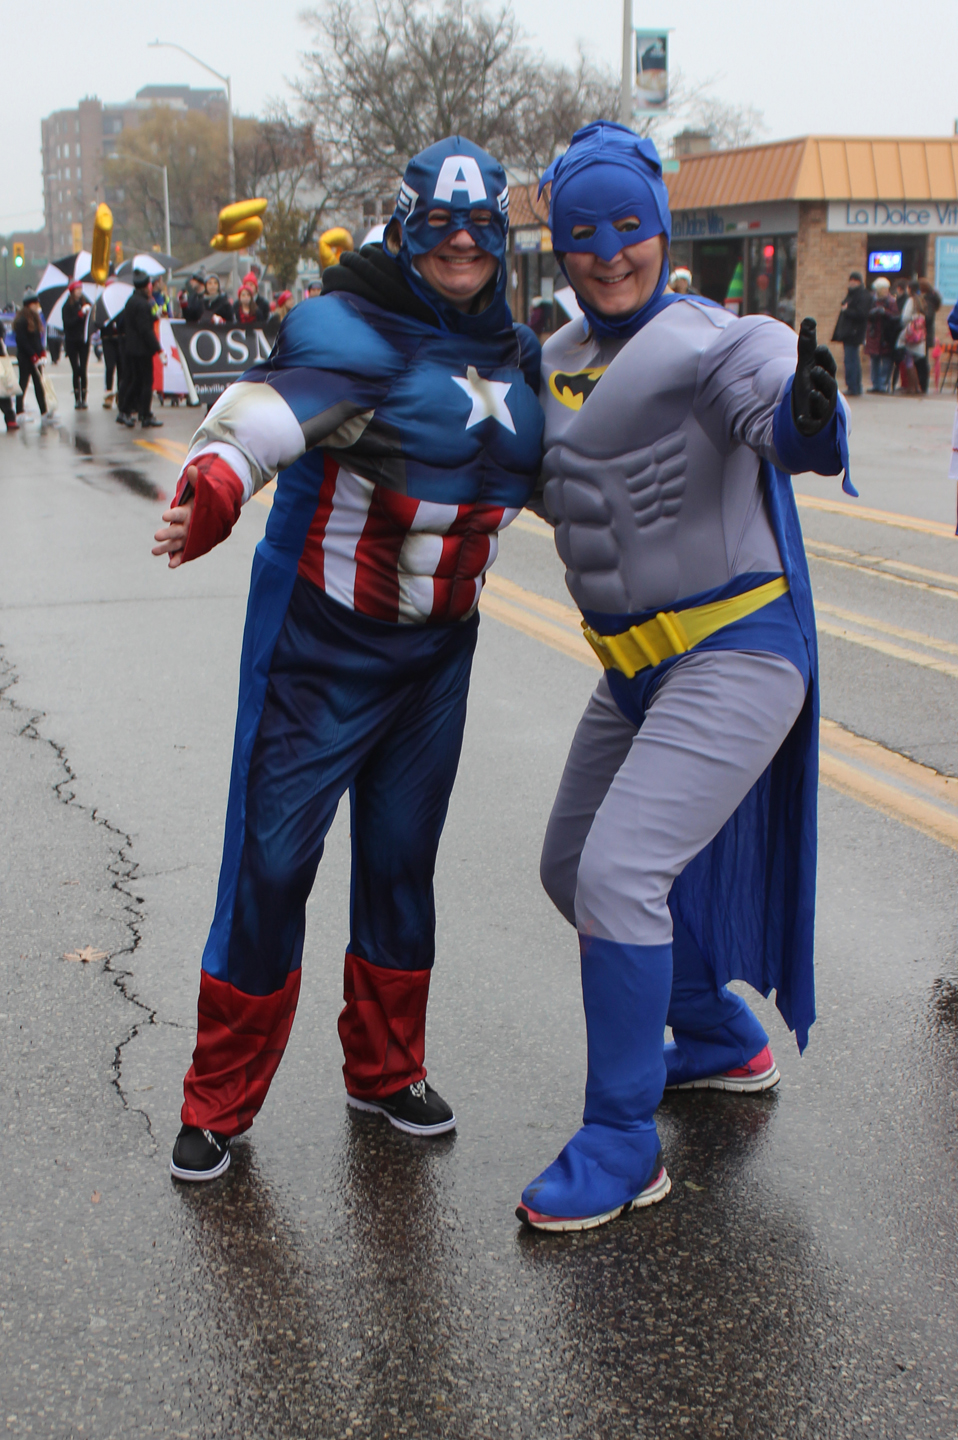 Local 793 members dressed as Captain America and Batman.